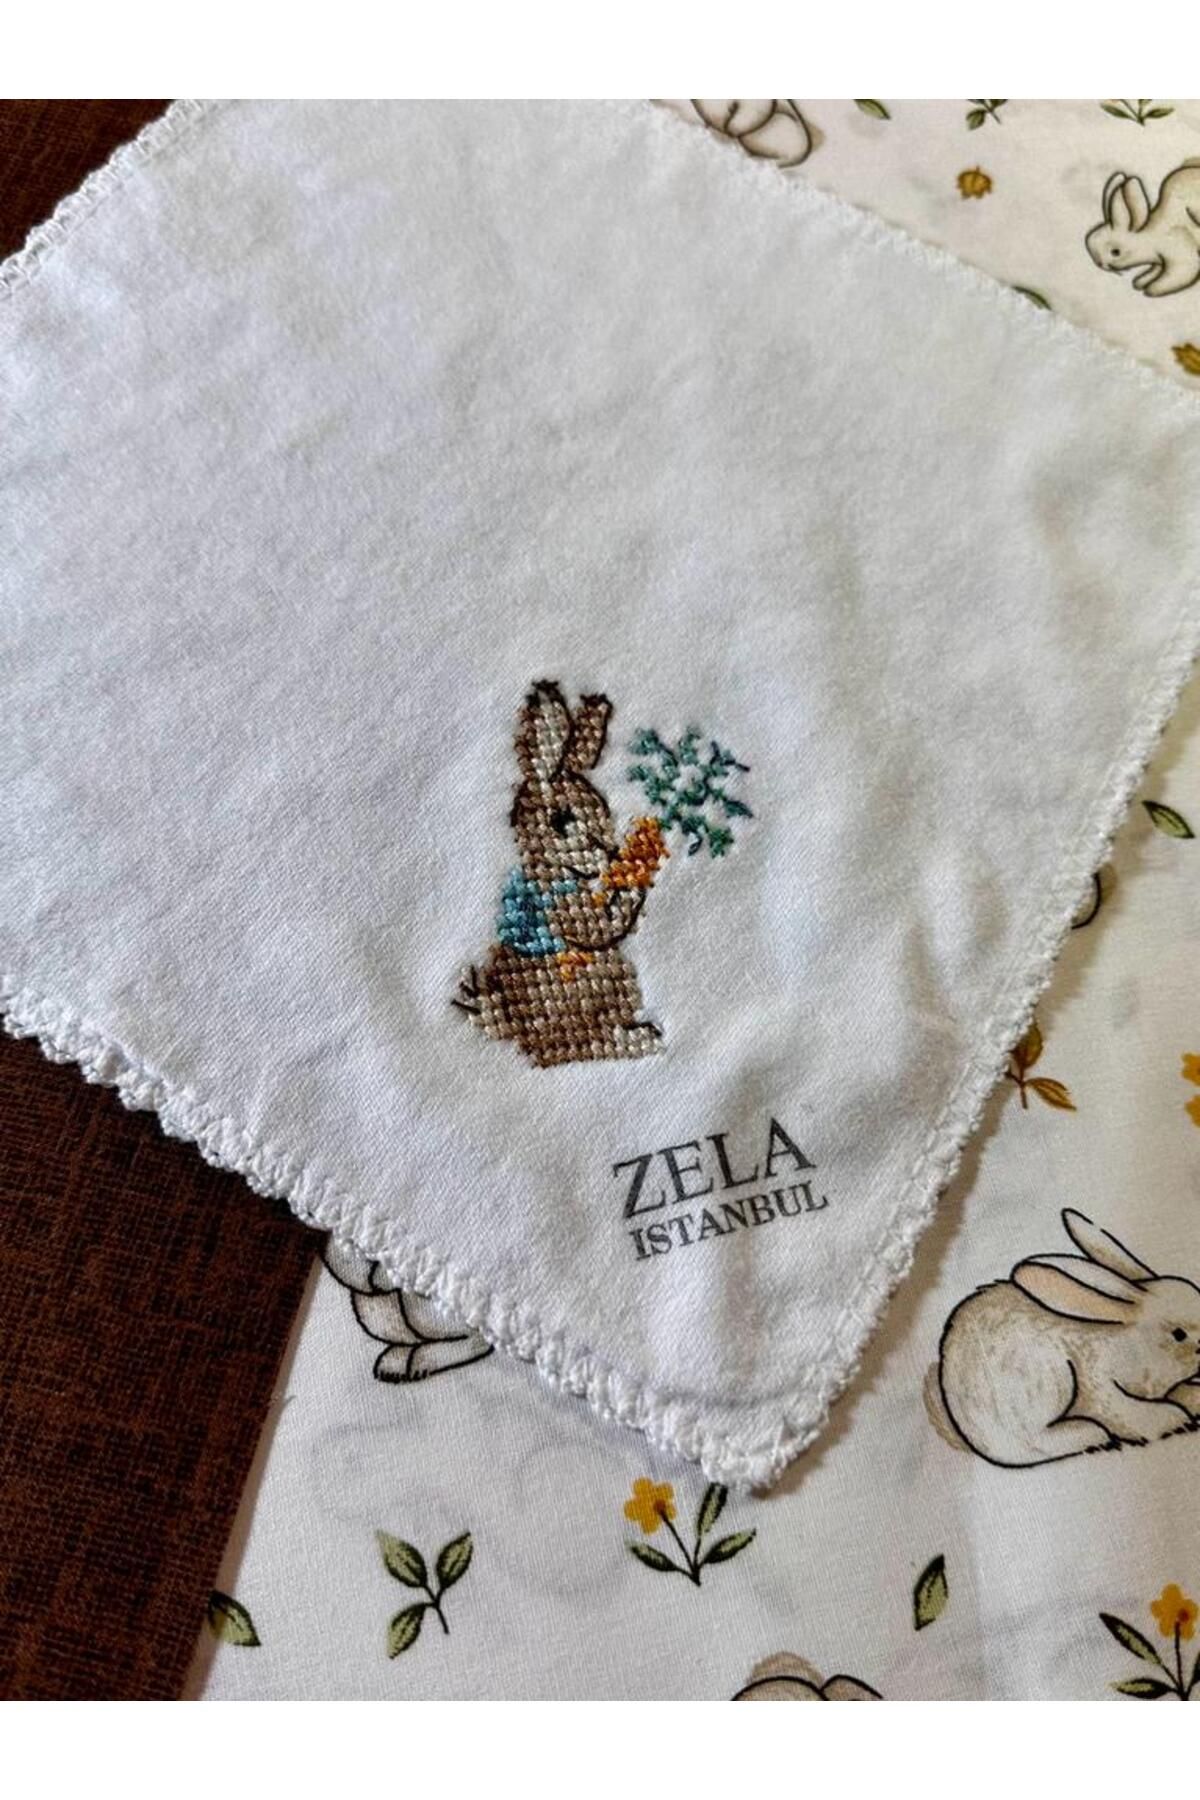 ZELA El nakışı bebek mendili havuçlu tavşan desenli model